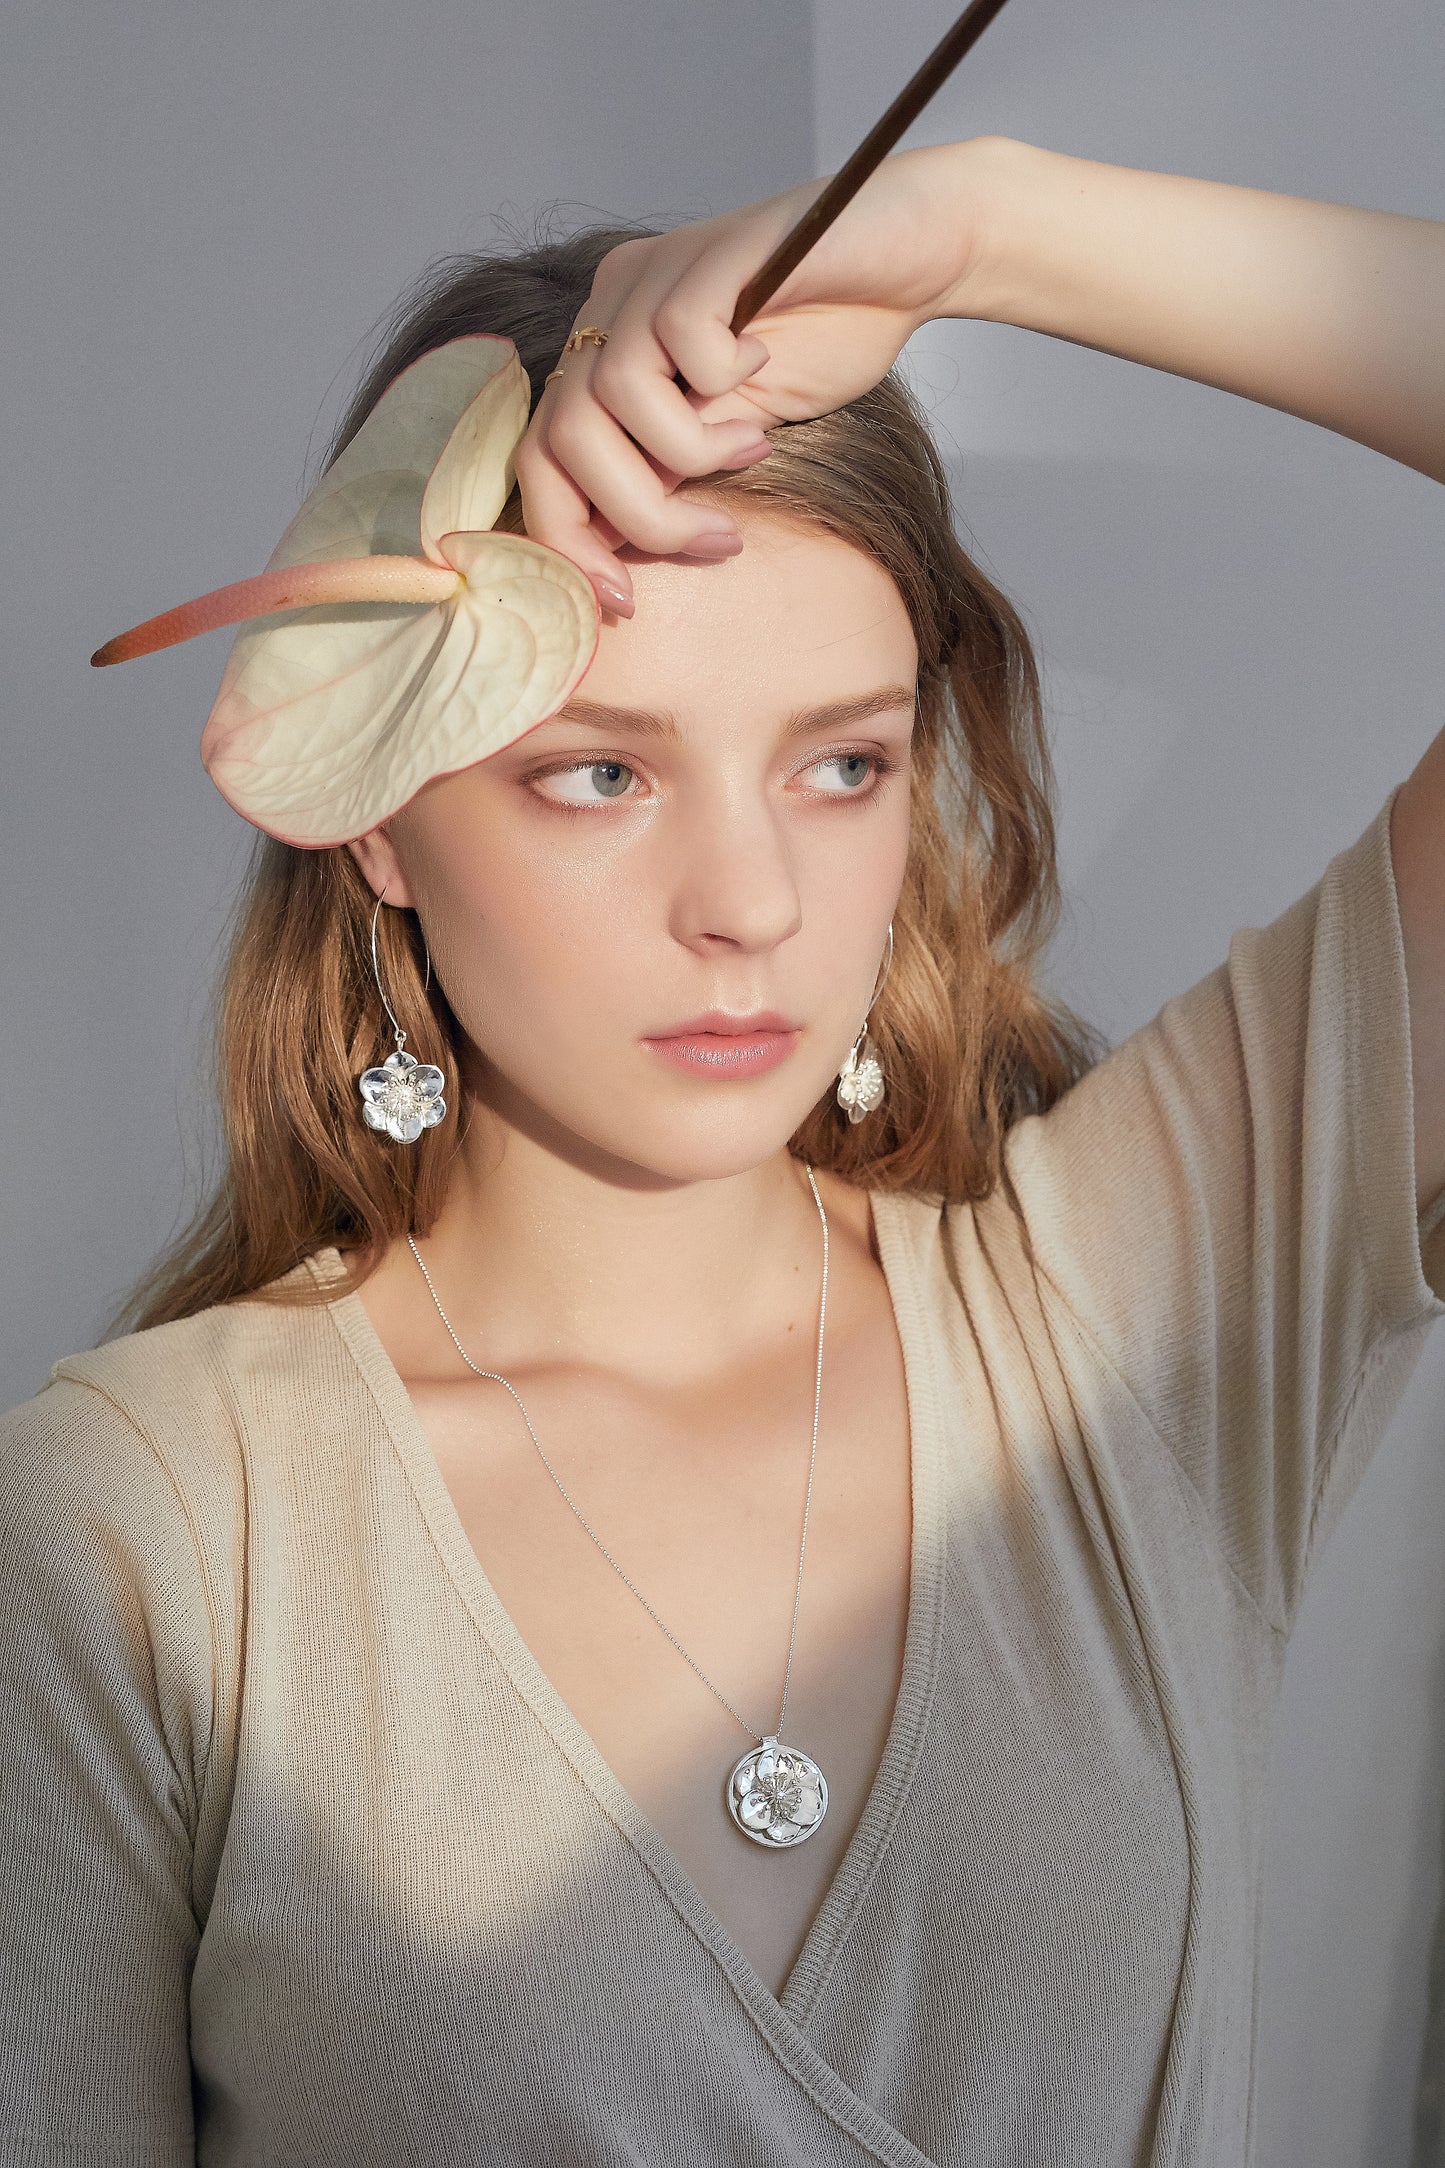 【綻放】一支獨秀-梅花耳勾耳環 /925純銀 Plum Blossom Wire Earrings